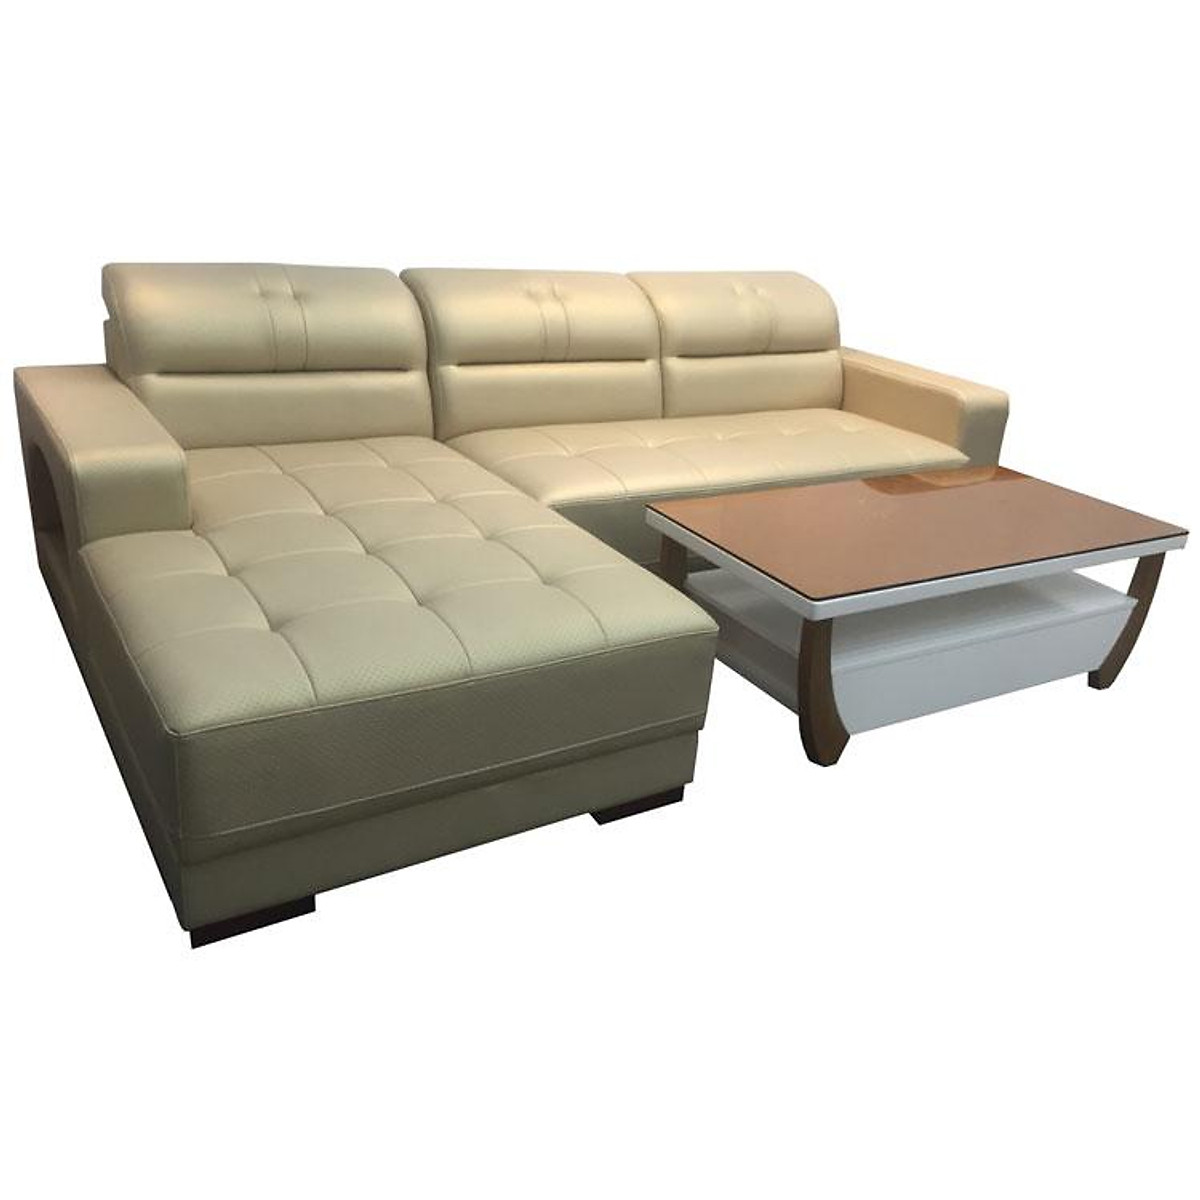 Sofa da góc L Tundo 2m5 x 1m6 tay vuông màu kem có thể chọn màu